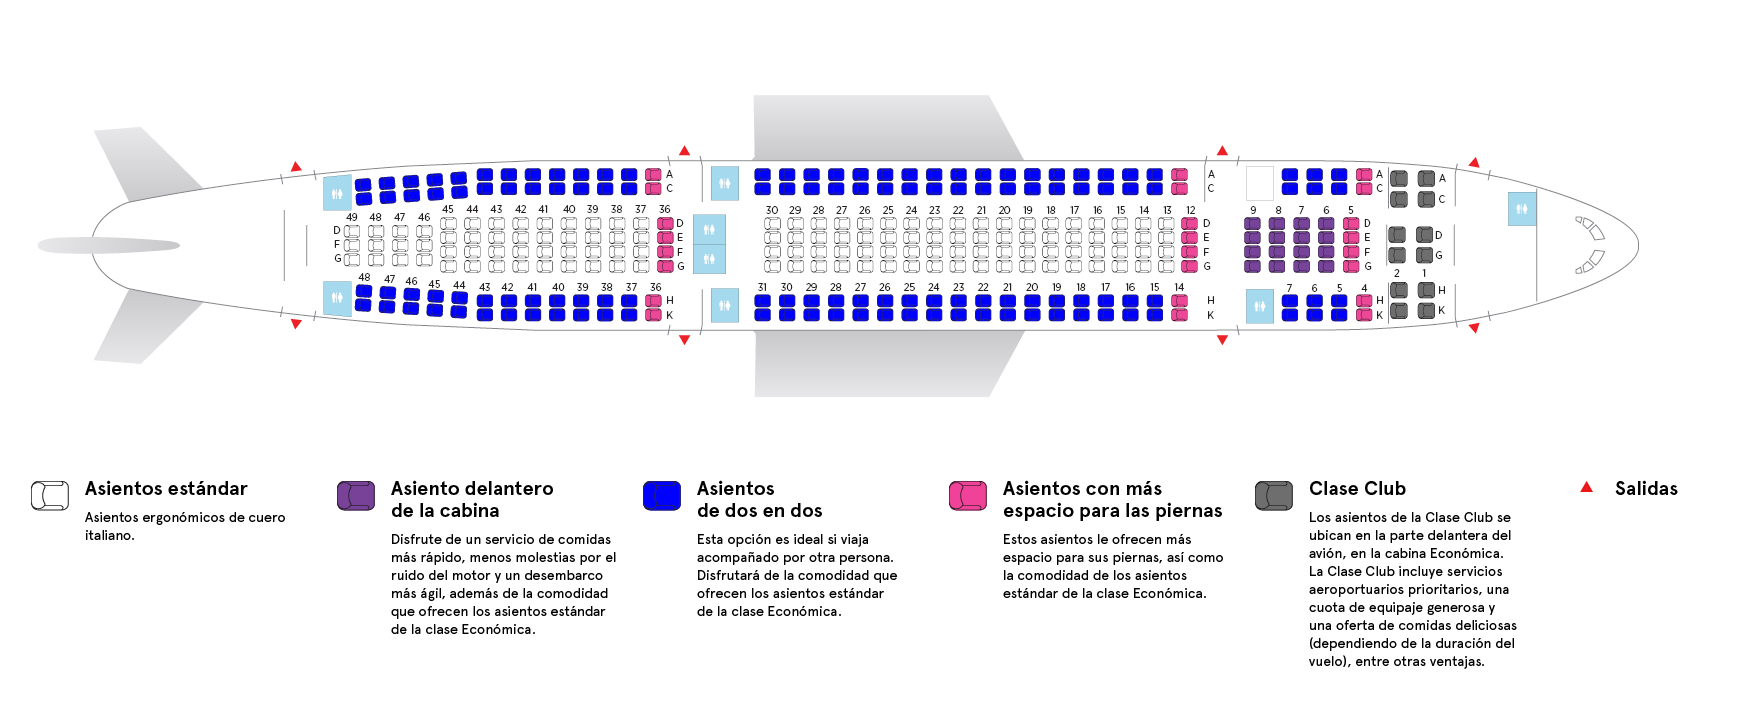 Cabina del avión Airbus A330-200 Low Density de Air Transat